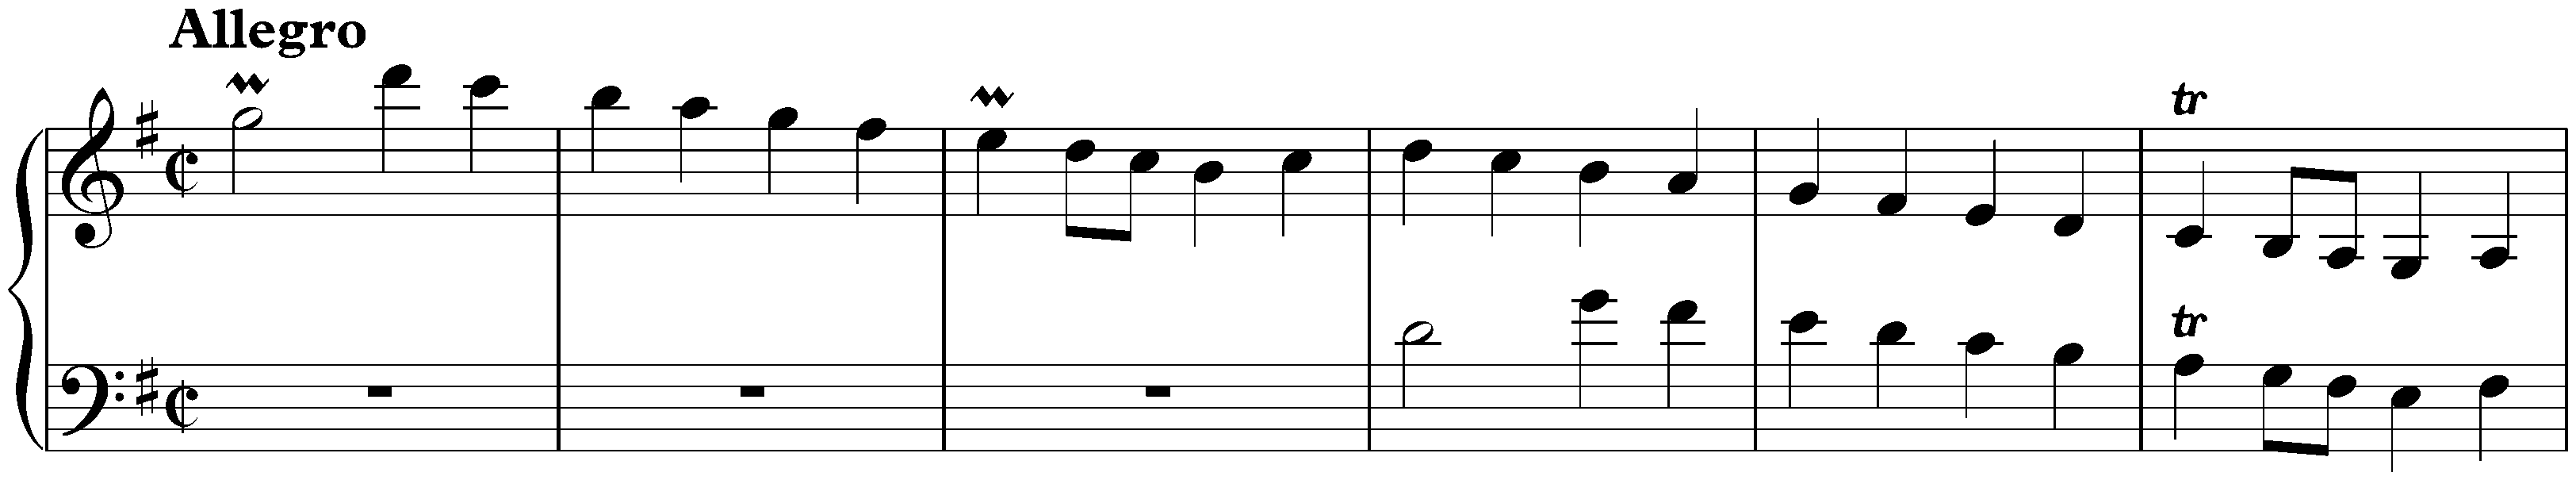 Sonata in G major, K. 522